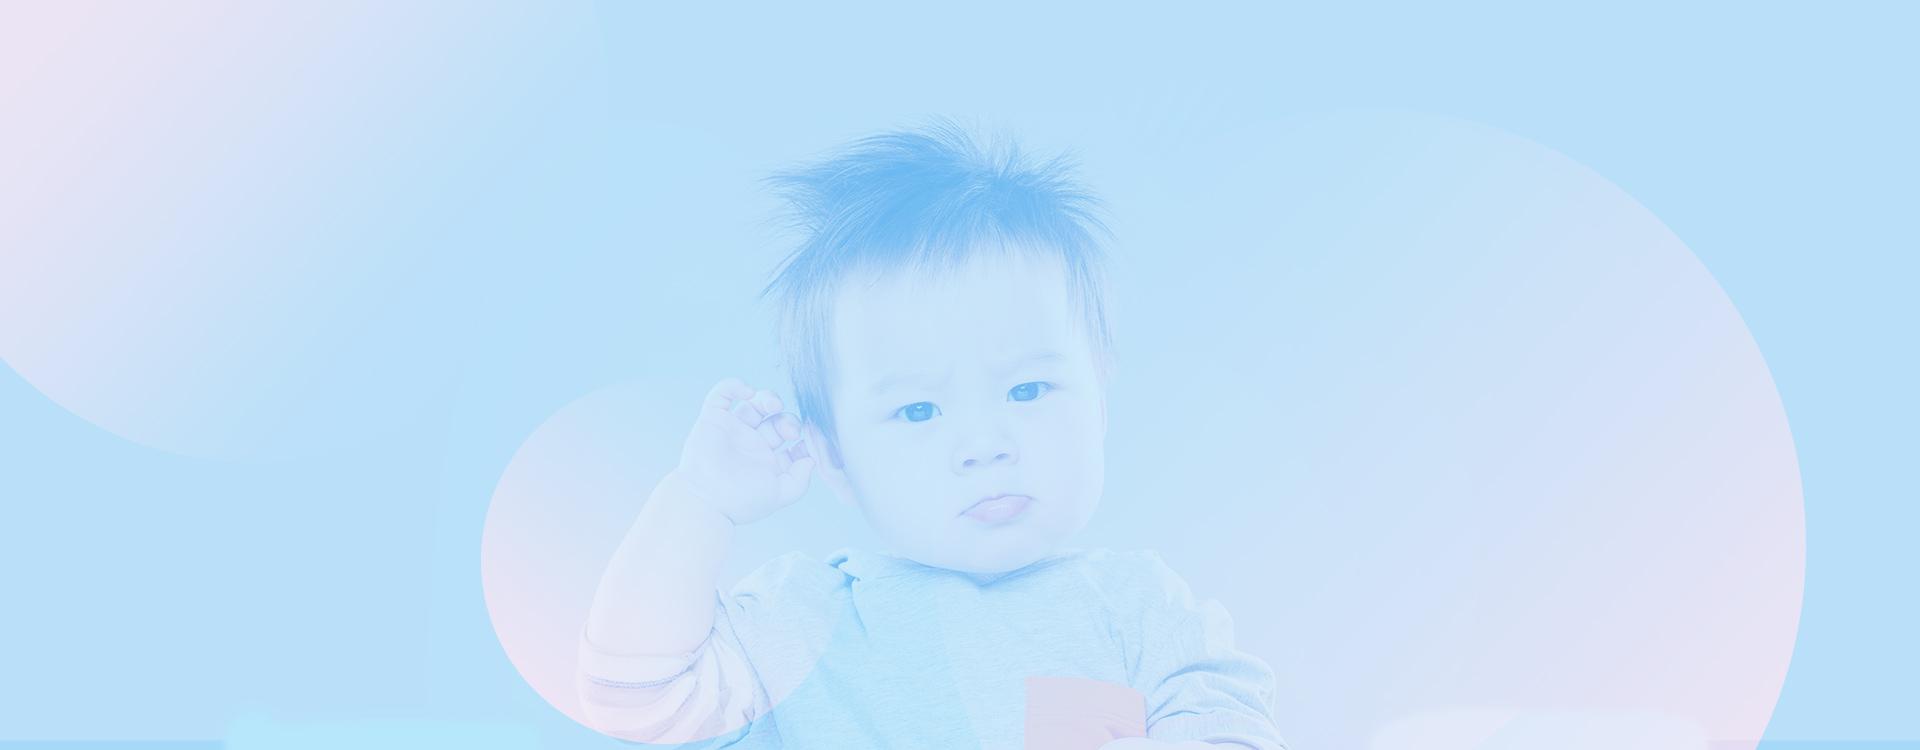 Kleinkind mit strubbeligen Haaren und skeptischem Blick als Hintergrundbild für FAQ-Bereich